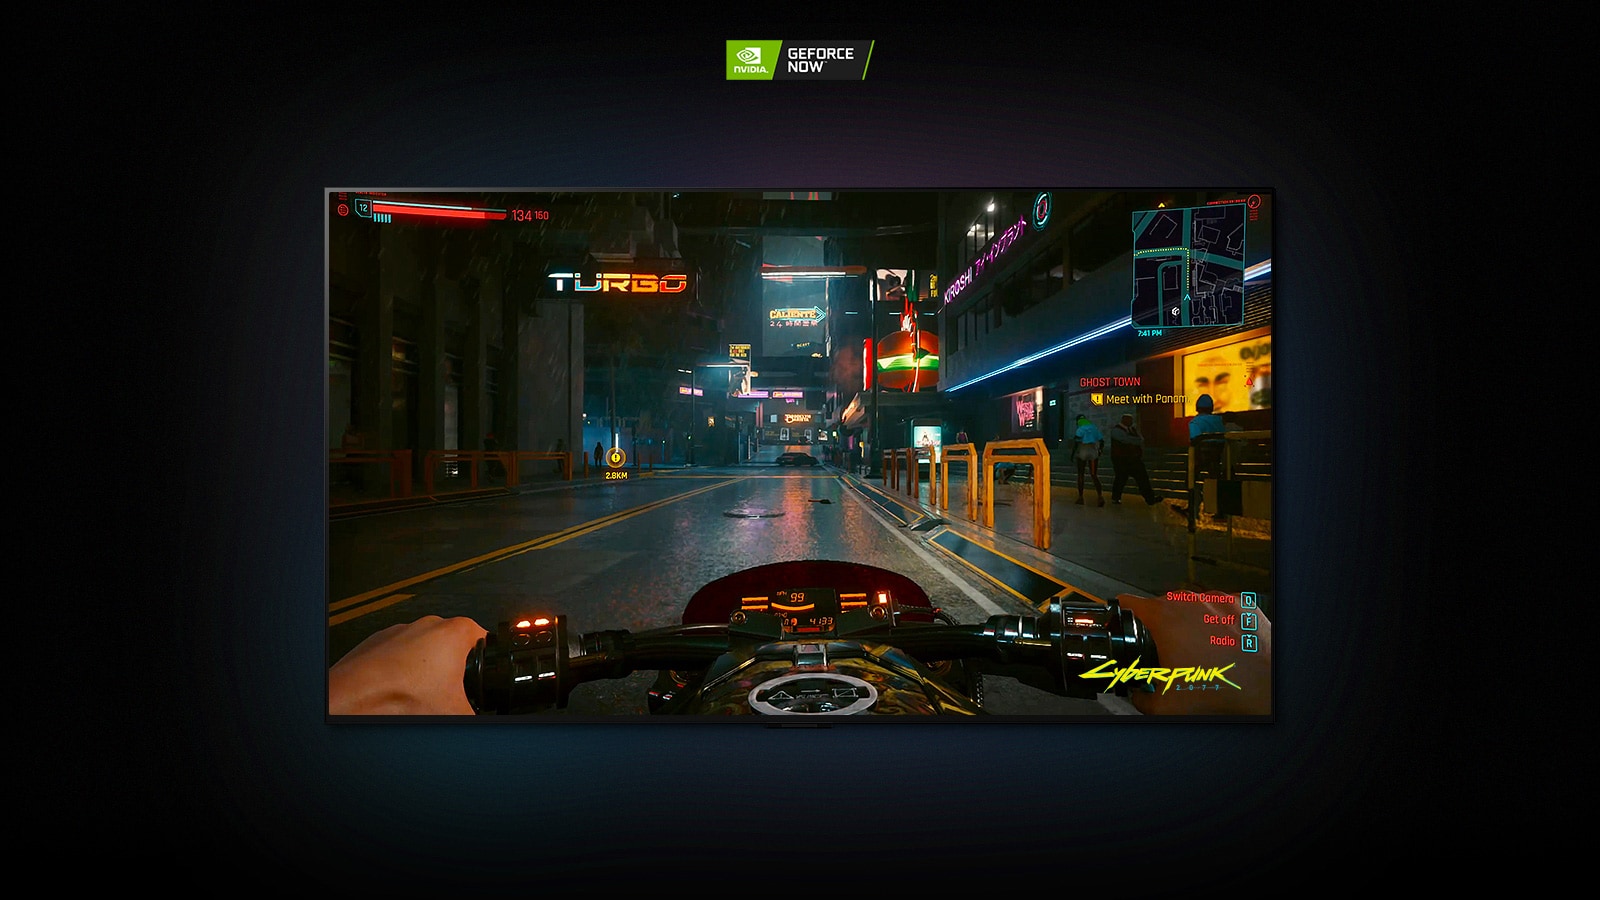 在LG OLED屏幕上播出的Cyber​​punk 2077場景中，玩家在霓虹燈街上開車摩托車